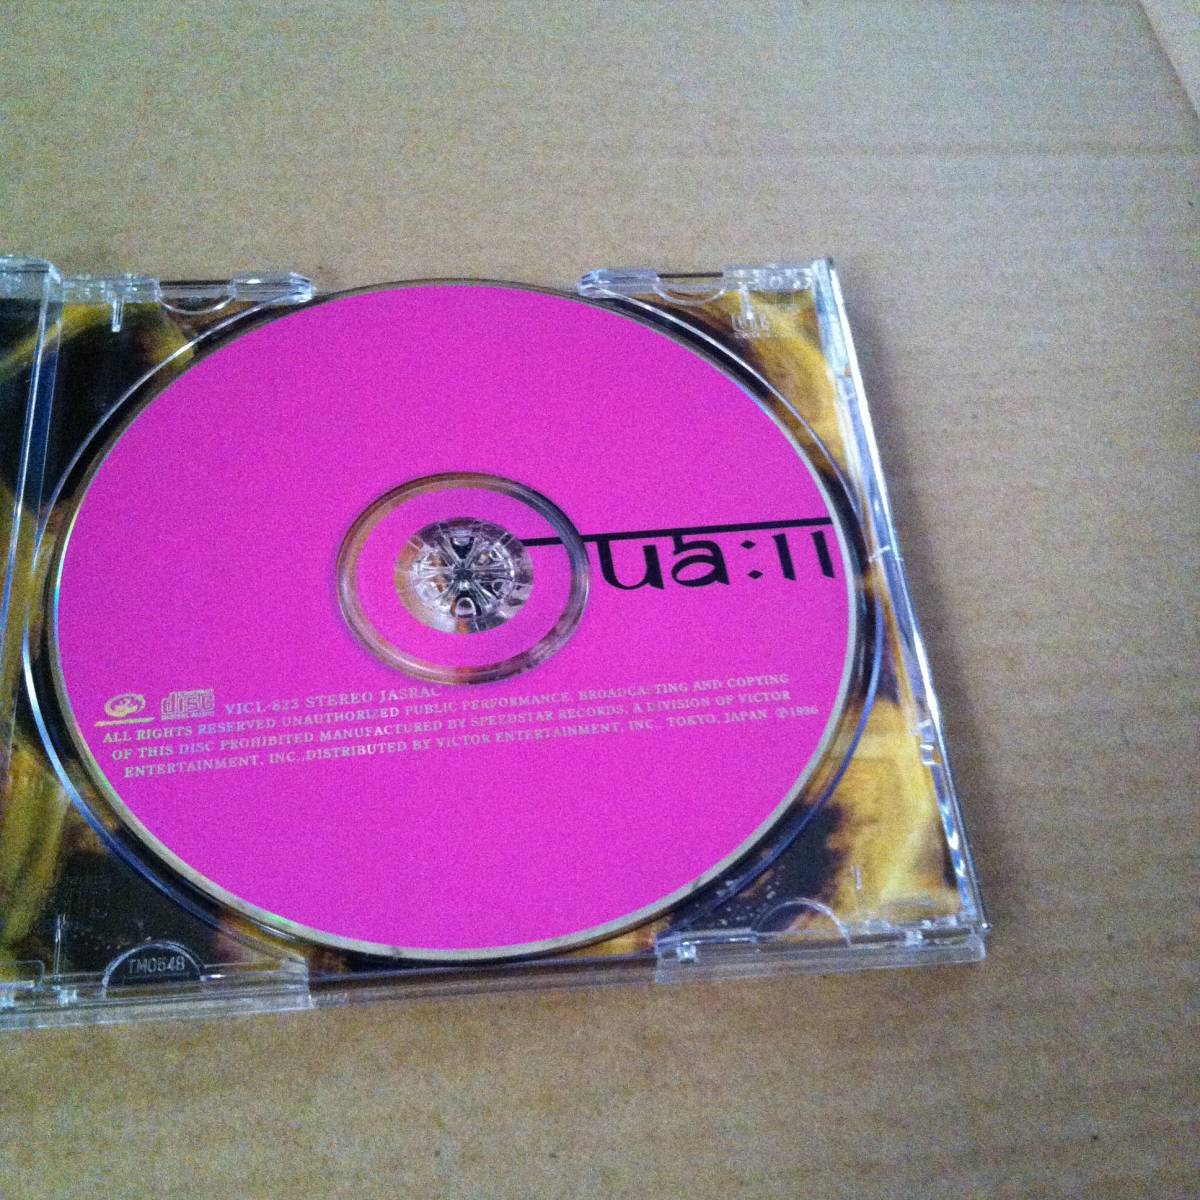 UA　　ua:II　　　CD　　　　　　商品検索用キーワード : 歌　ボーカル VOCAL　アルバム ALBUM_画像6